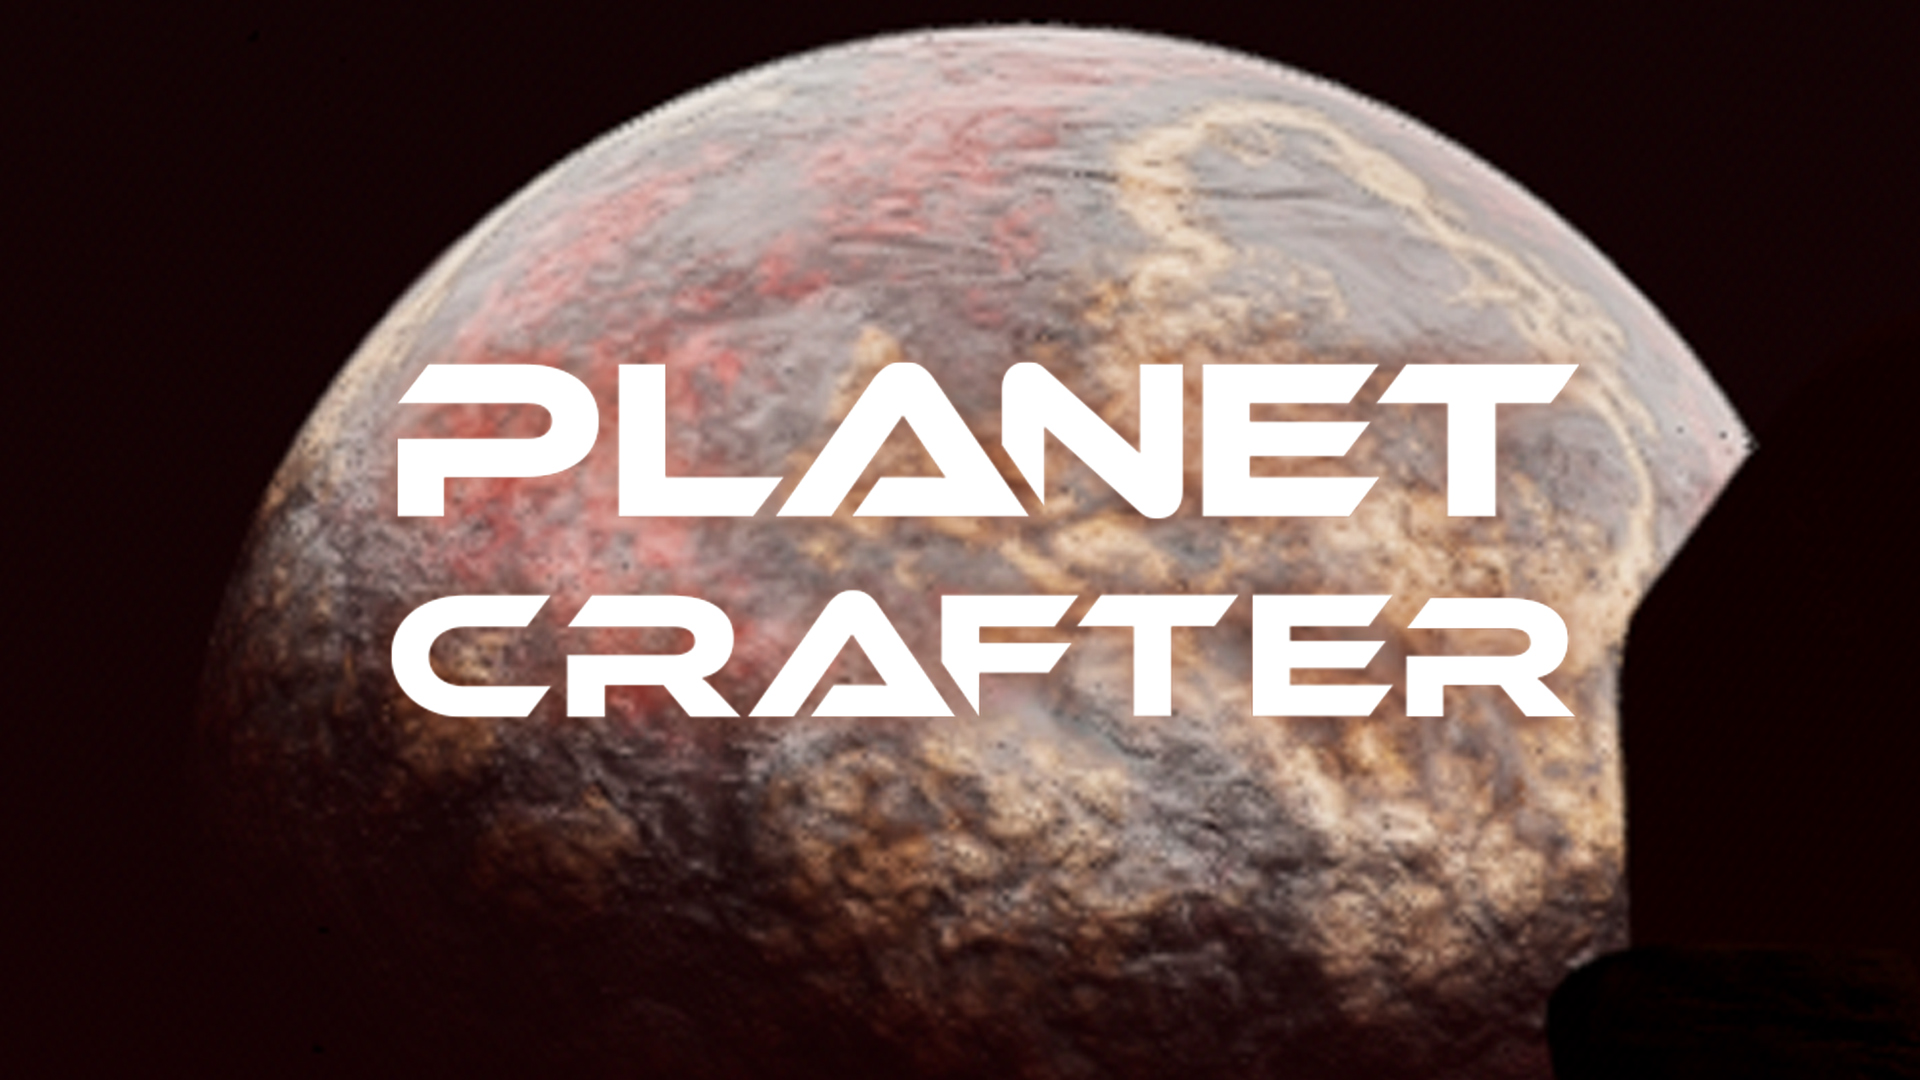 ПРОВЕРИЛИ МЕТЕОРИТ НА СЕБЕ ▣ The Planet Crafter: Prologue #4